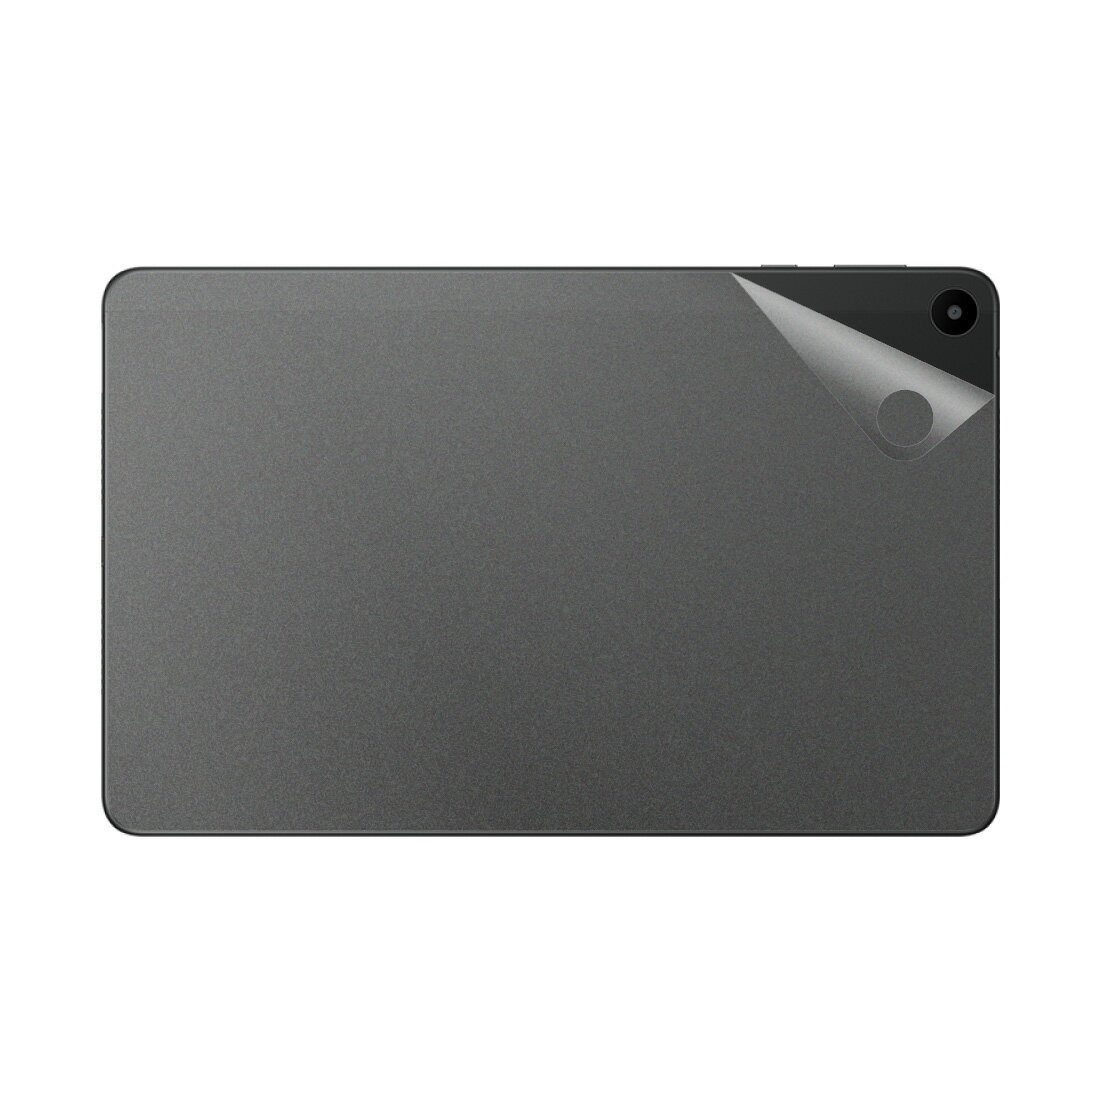 スキンシール HUAWEI MatePad SE 10.4 【透明・すりガラス調】 日本製 自社製造直販